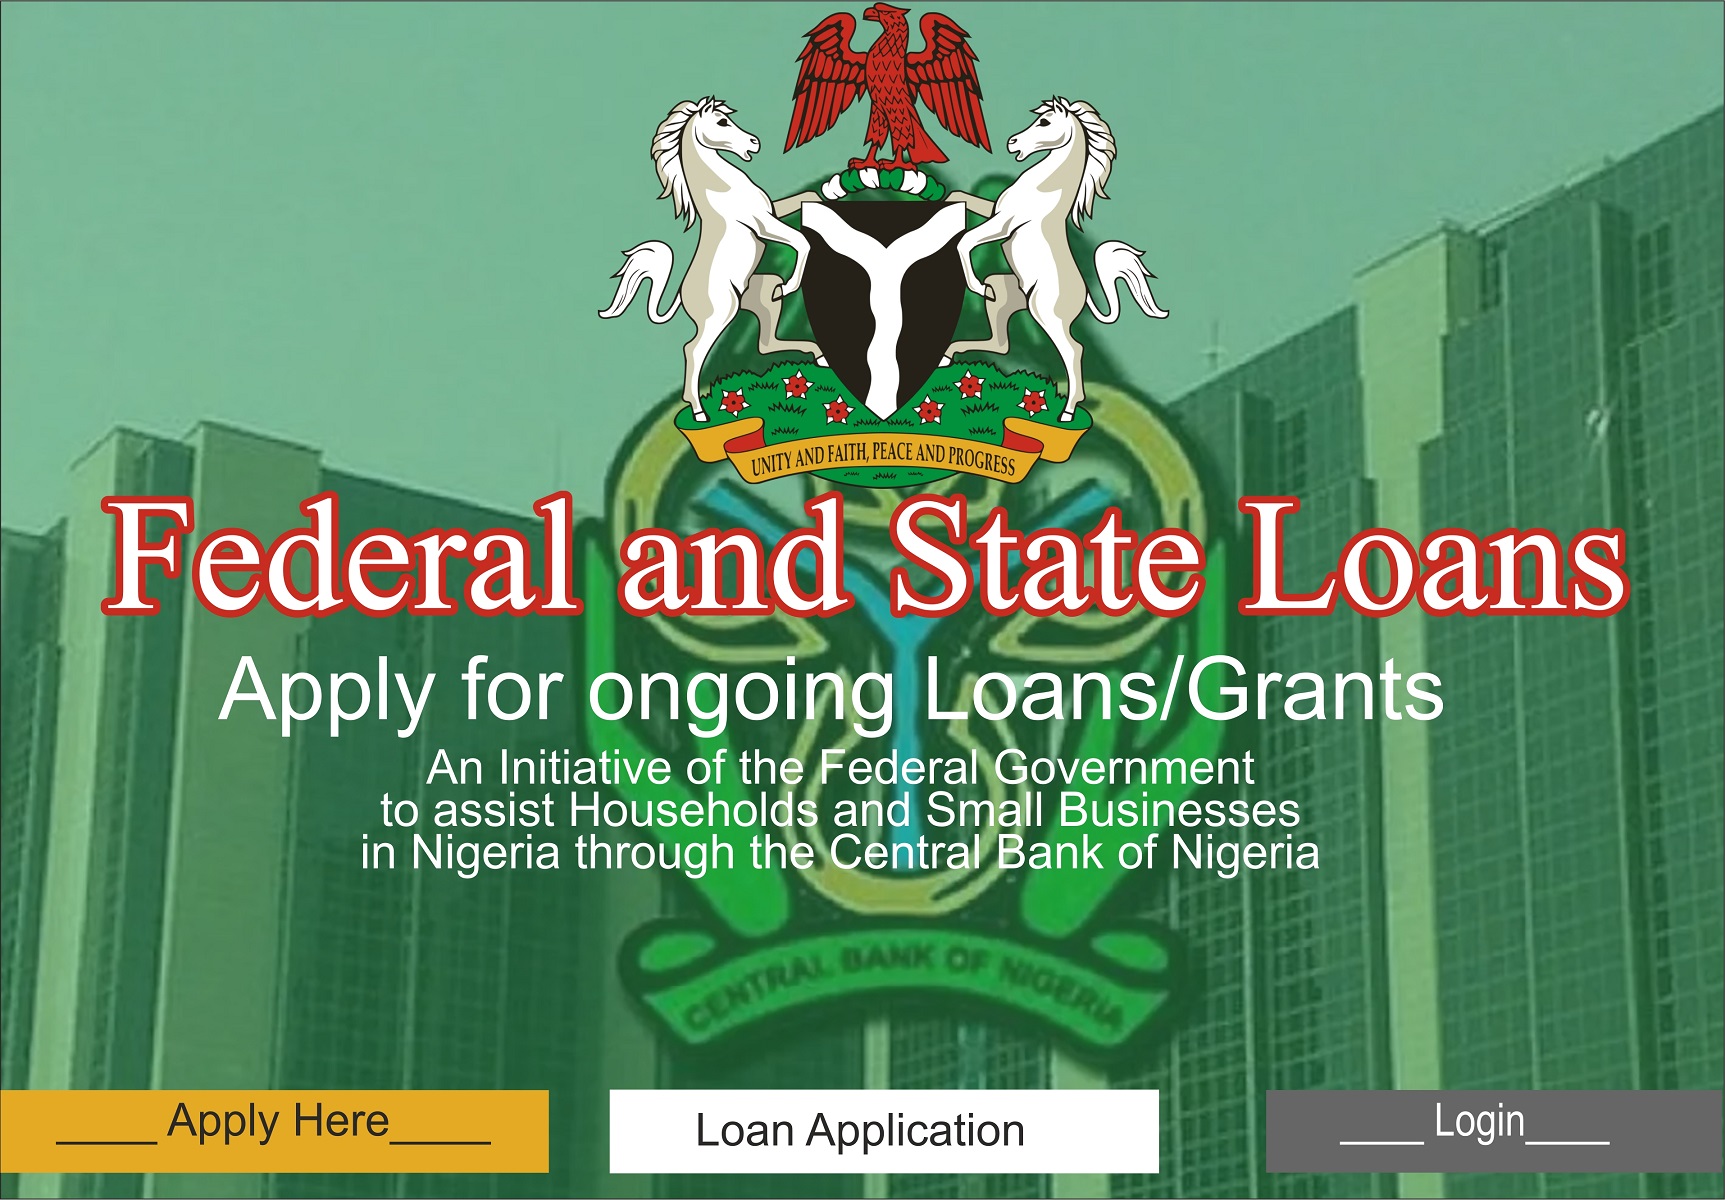 Loans in Nigeria